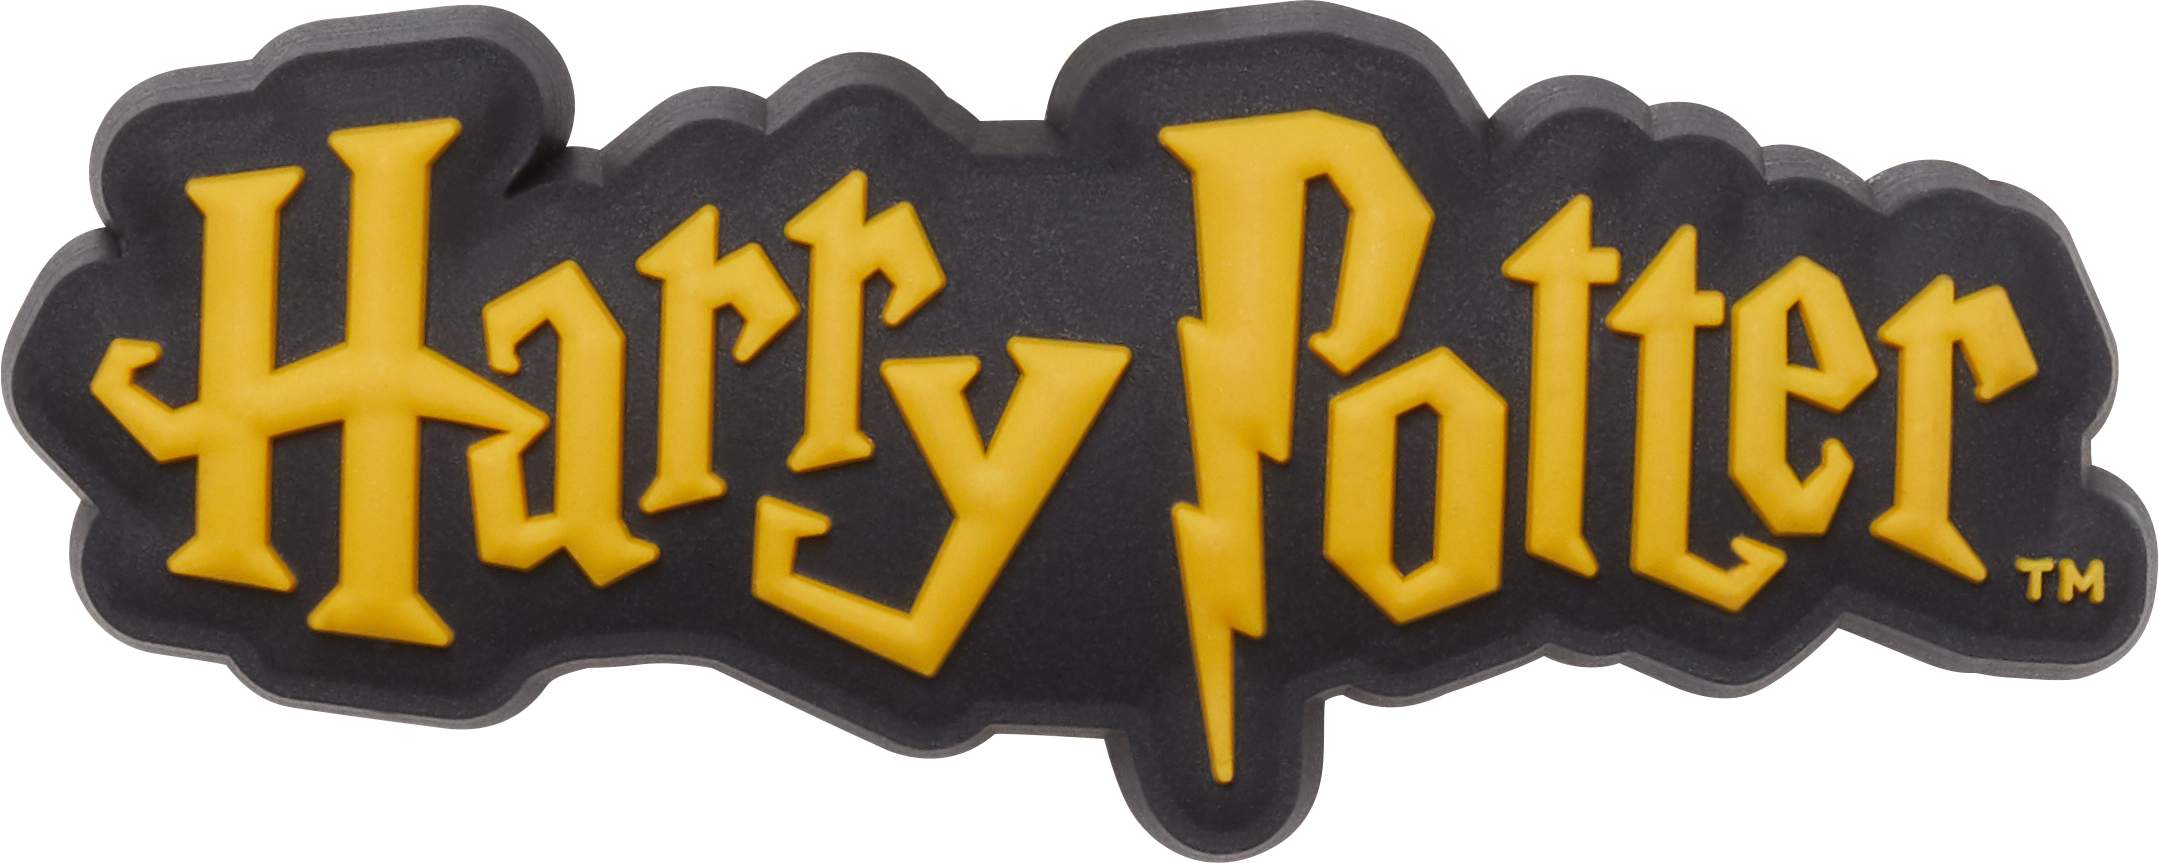 Harry Potter Logo Jibbitz Shoe Charm 